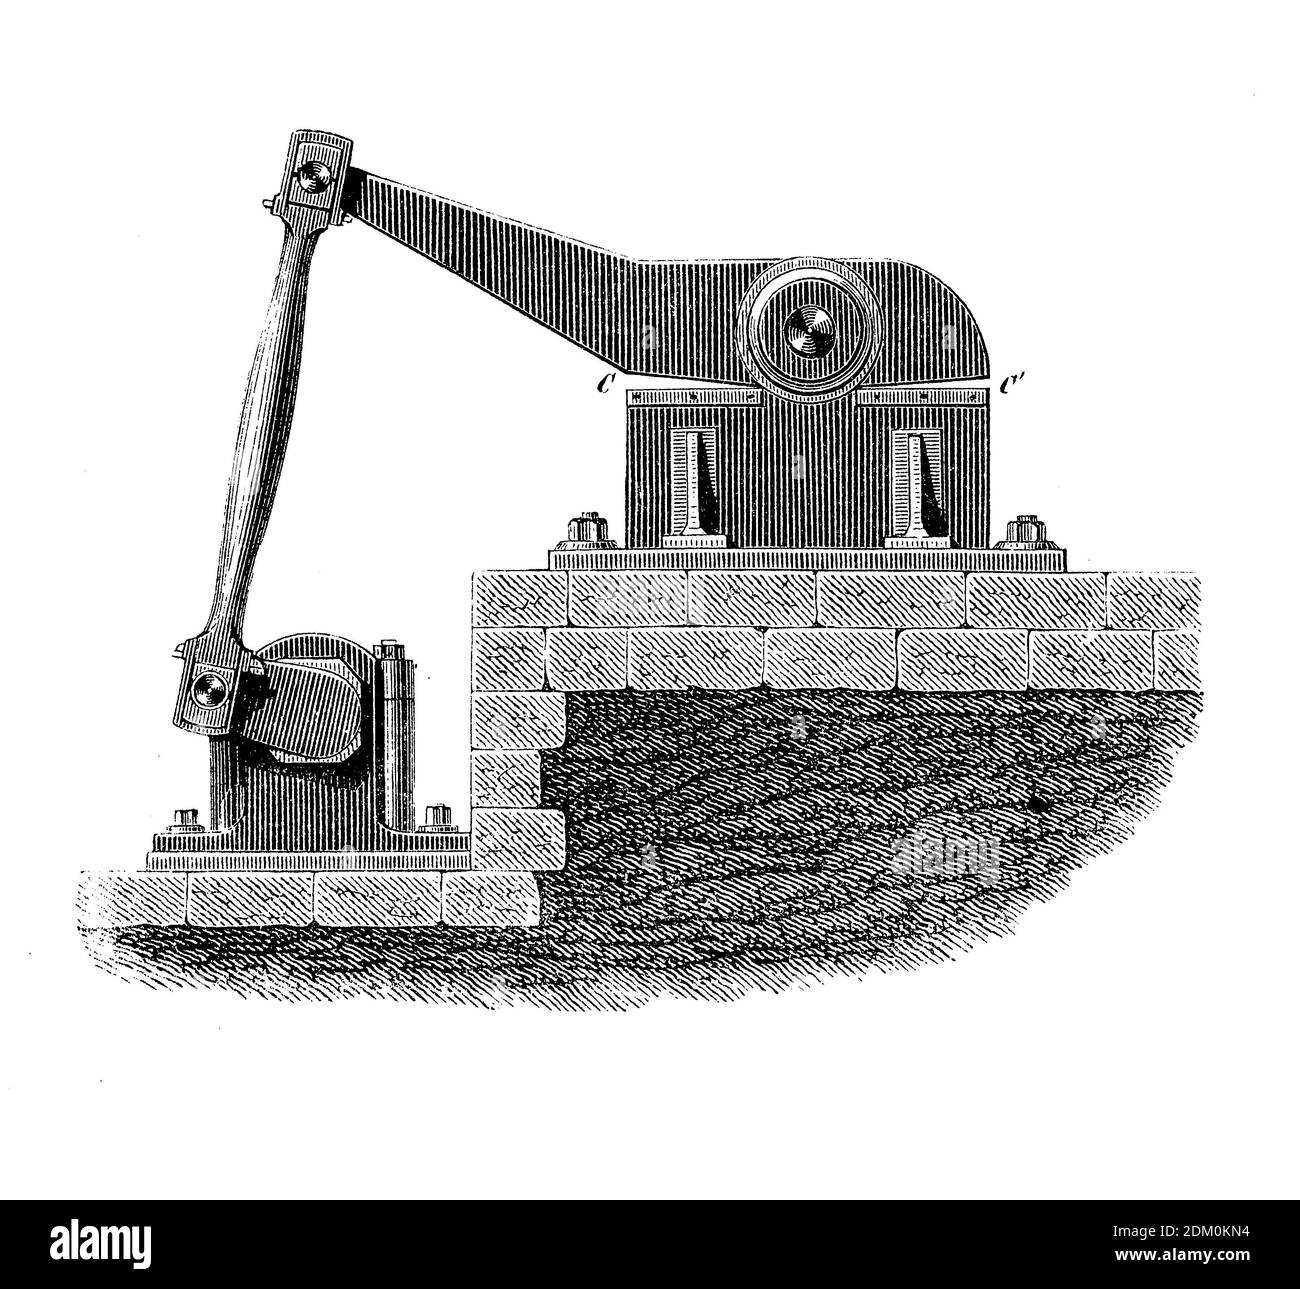 Machines industrielles : cisaille à alligator ou cisaille à levier, cisaille à métal avec mâchoire articulée hydraulique, gravure du XIXe siècle Banque D'Images